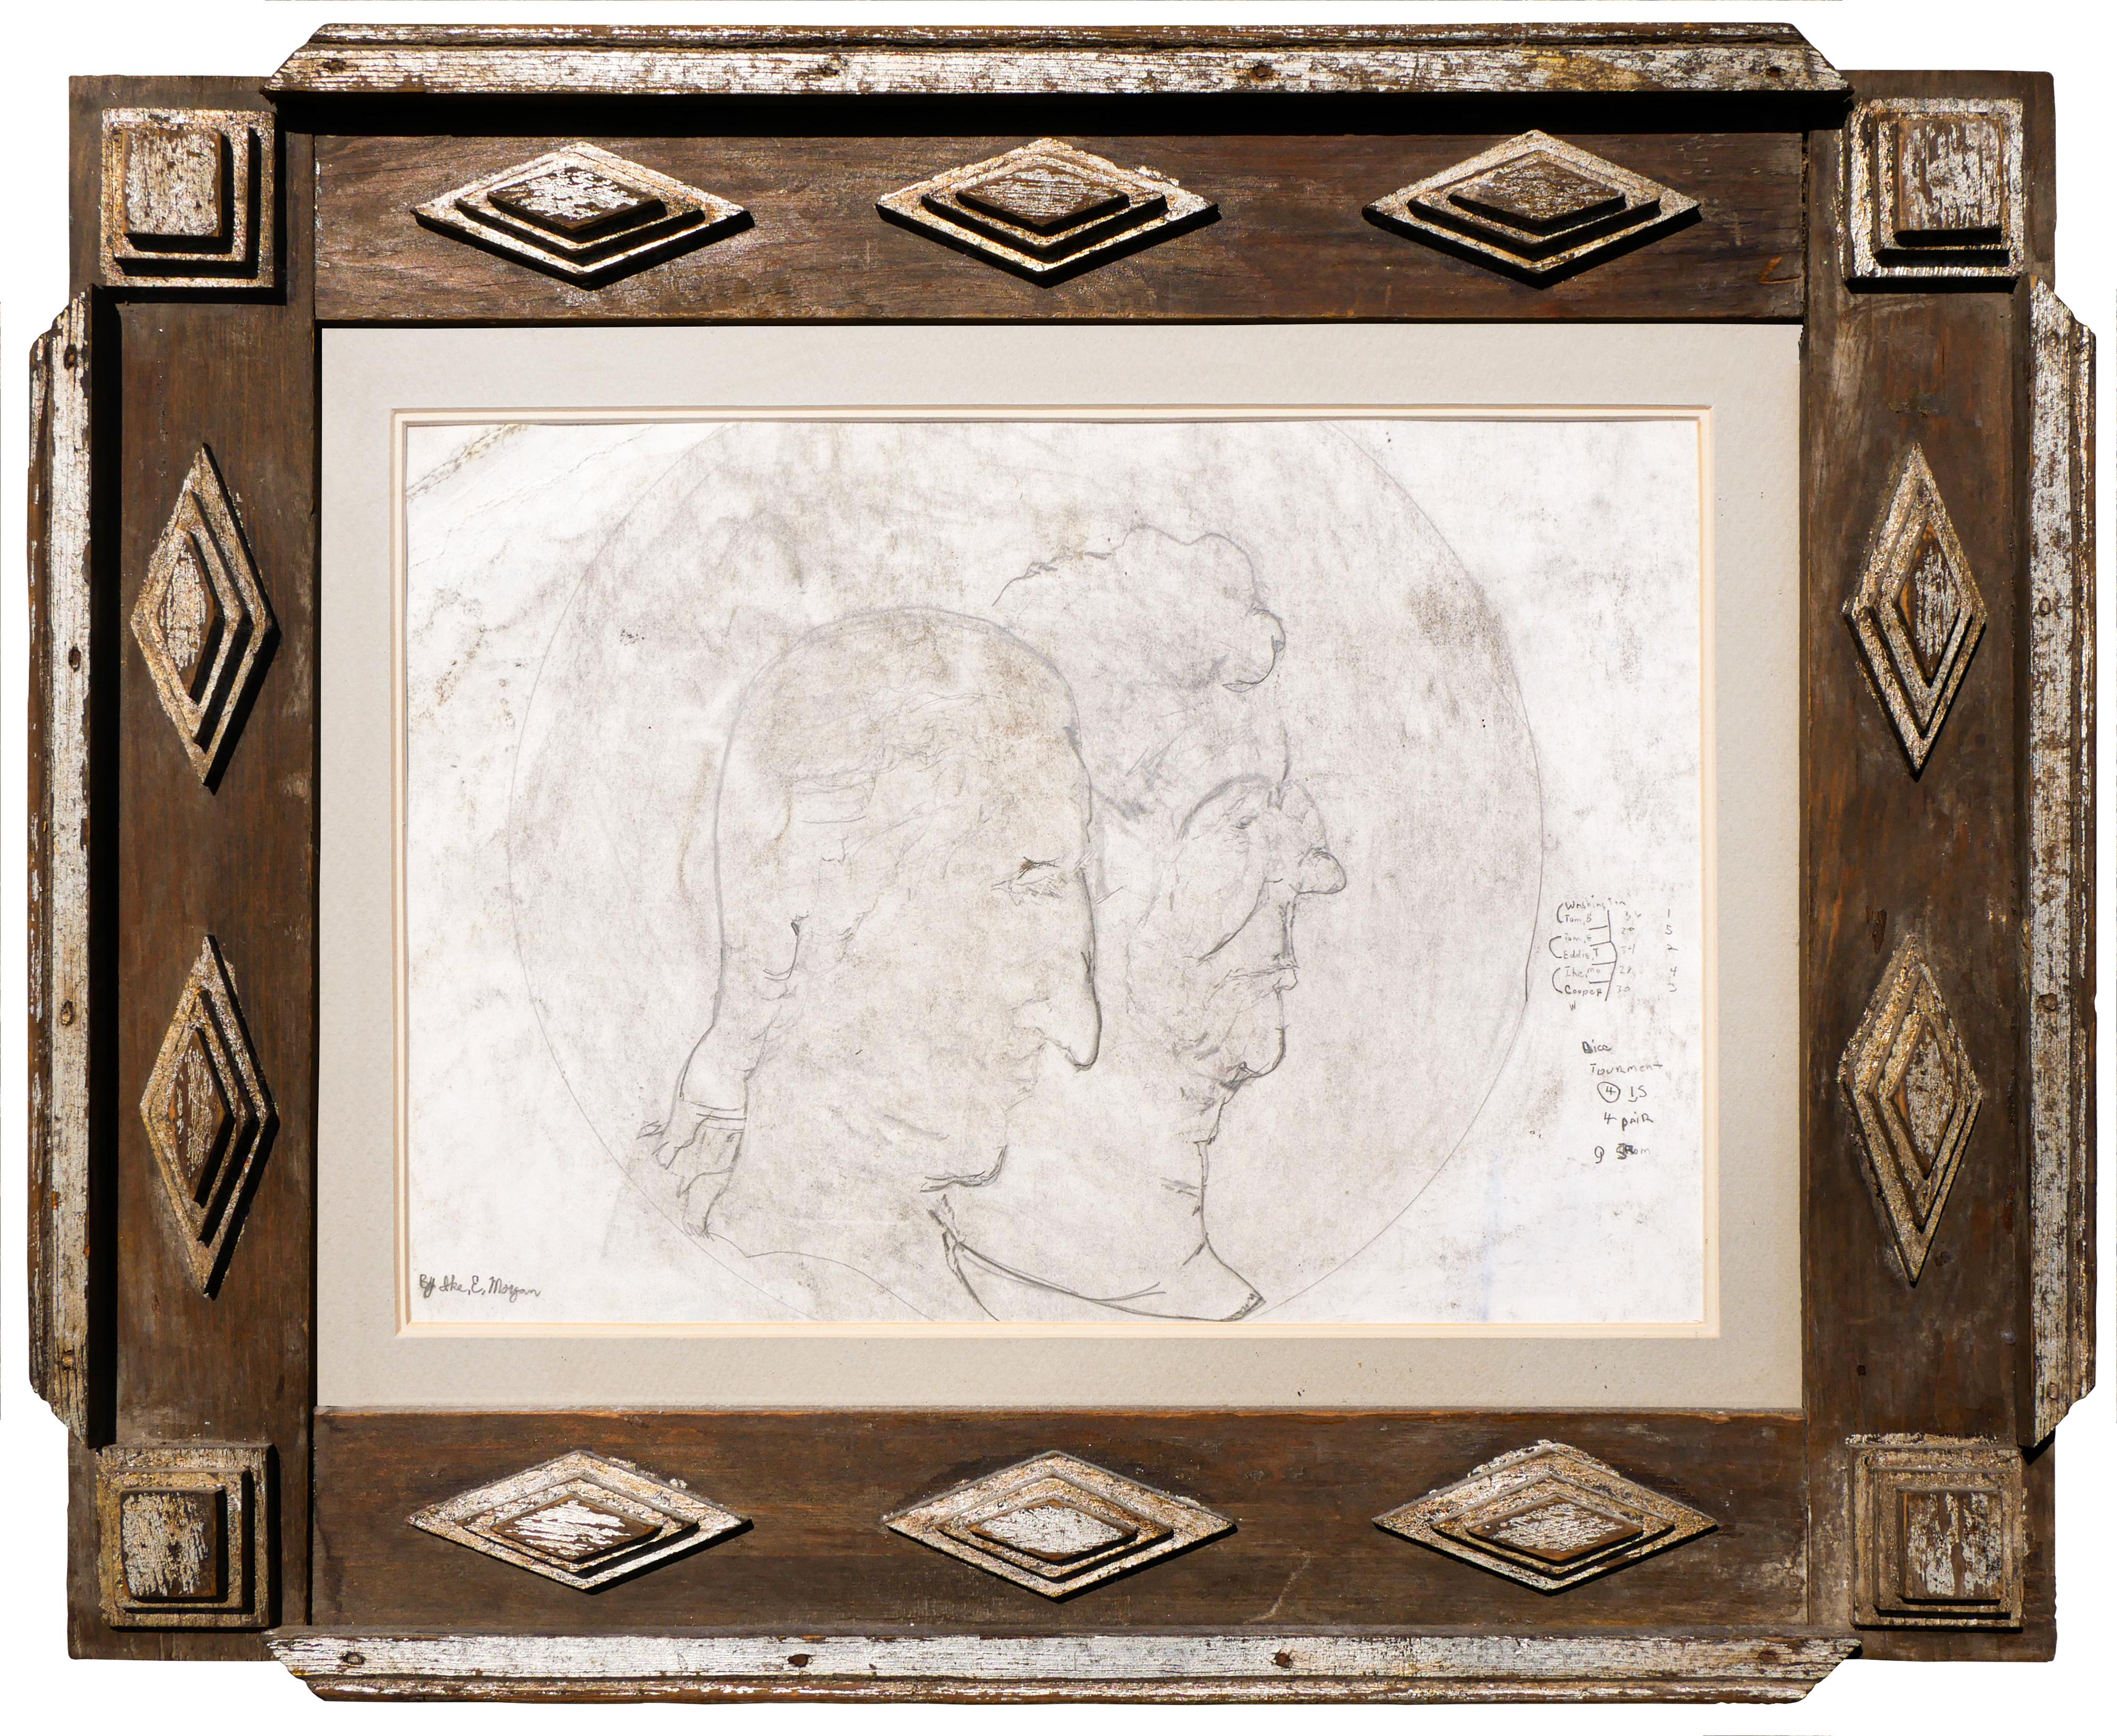 Ike E. Morgan Portrait – Abstrakte figurative Zeichnung von Männern in Schwarz-Weiß mit Textelementen